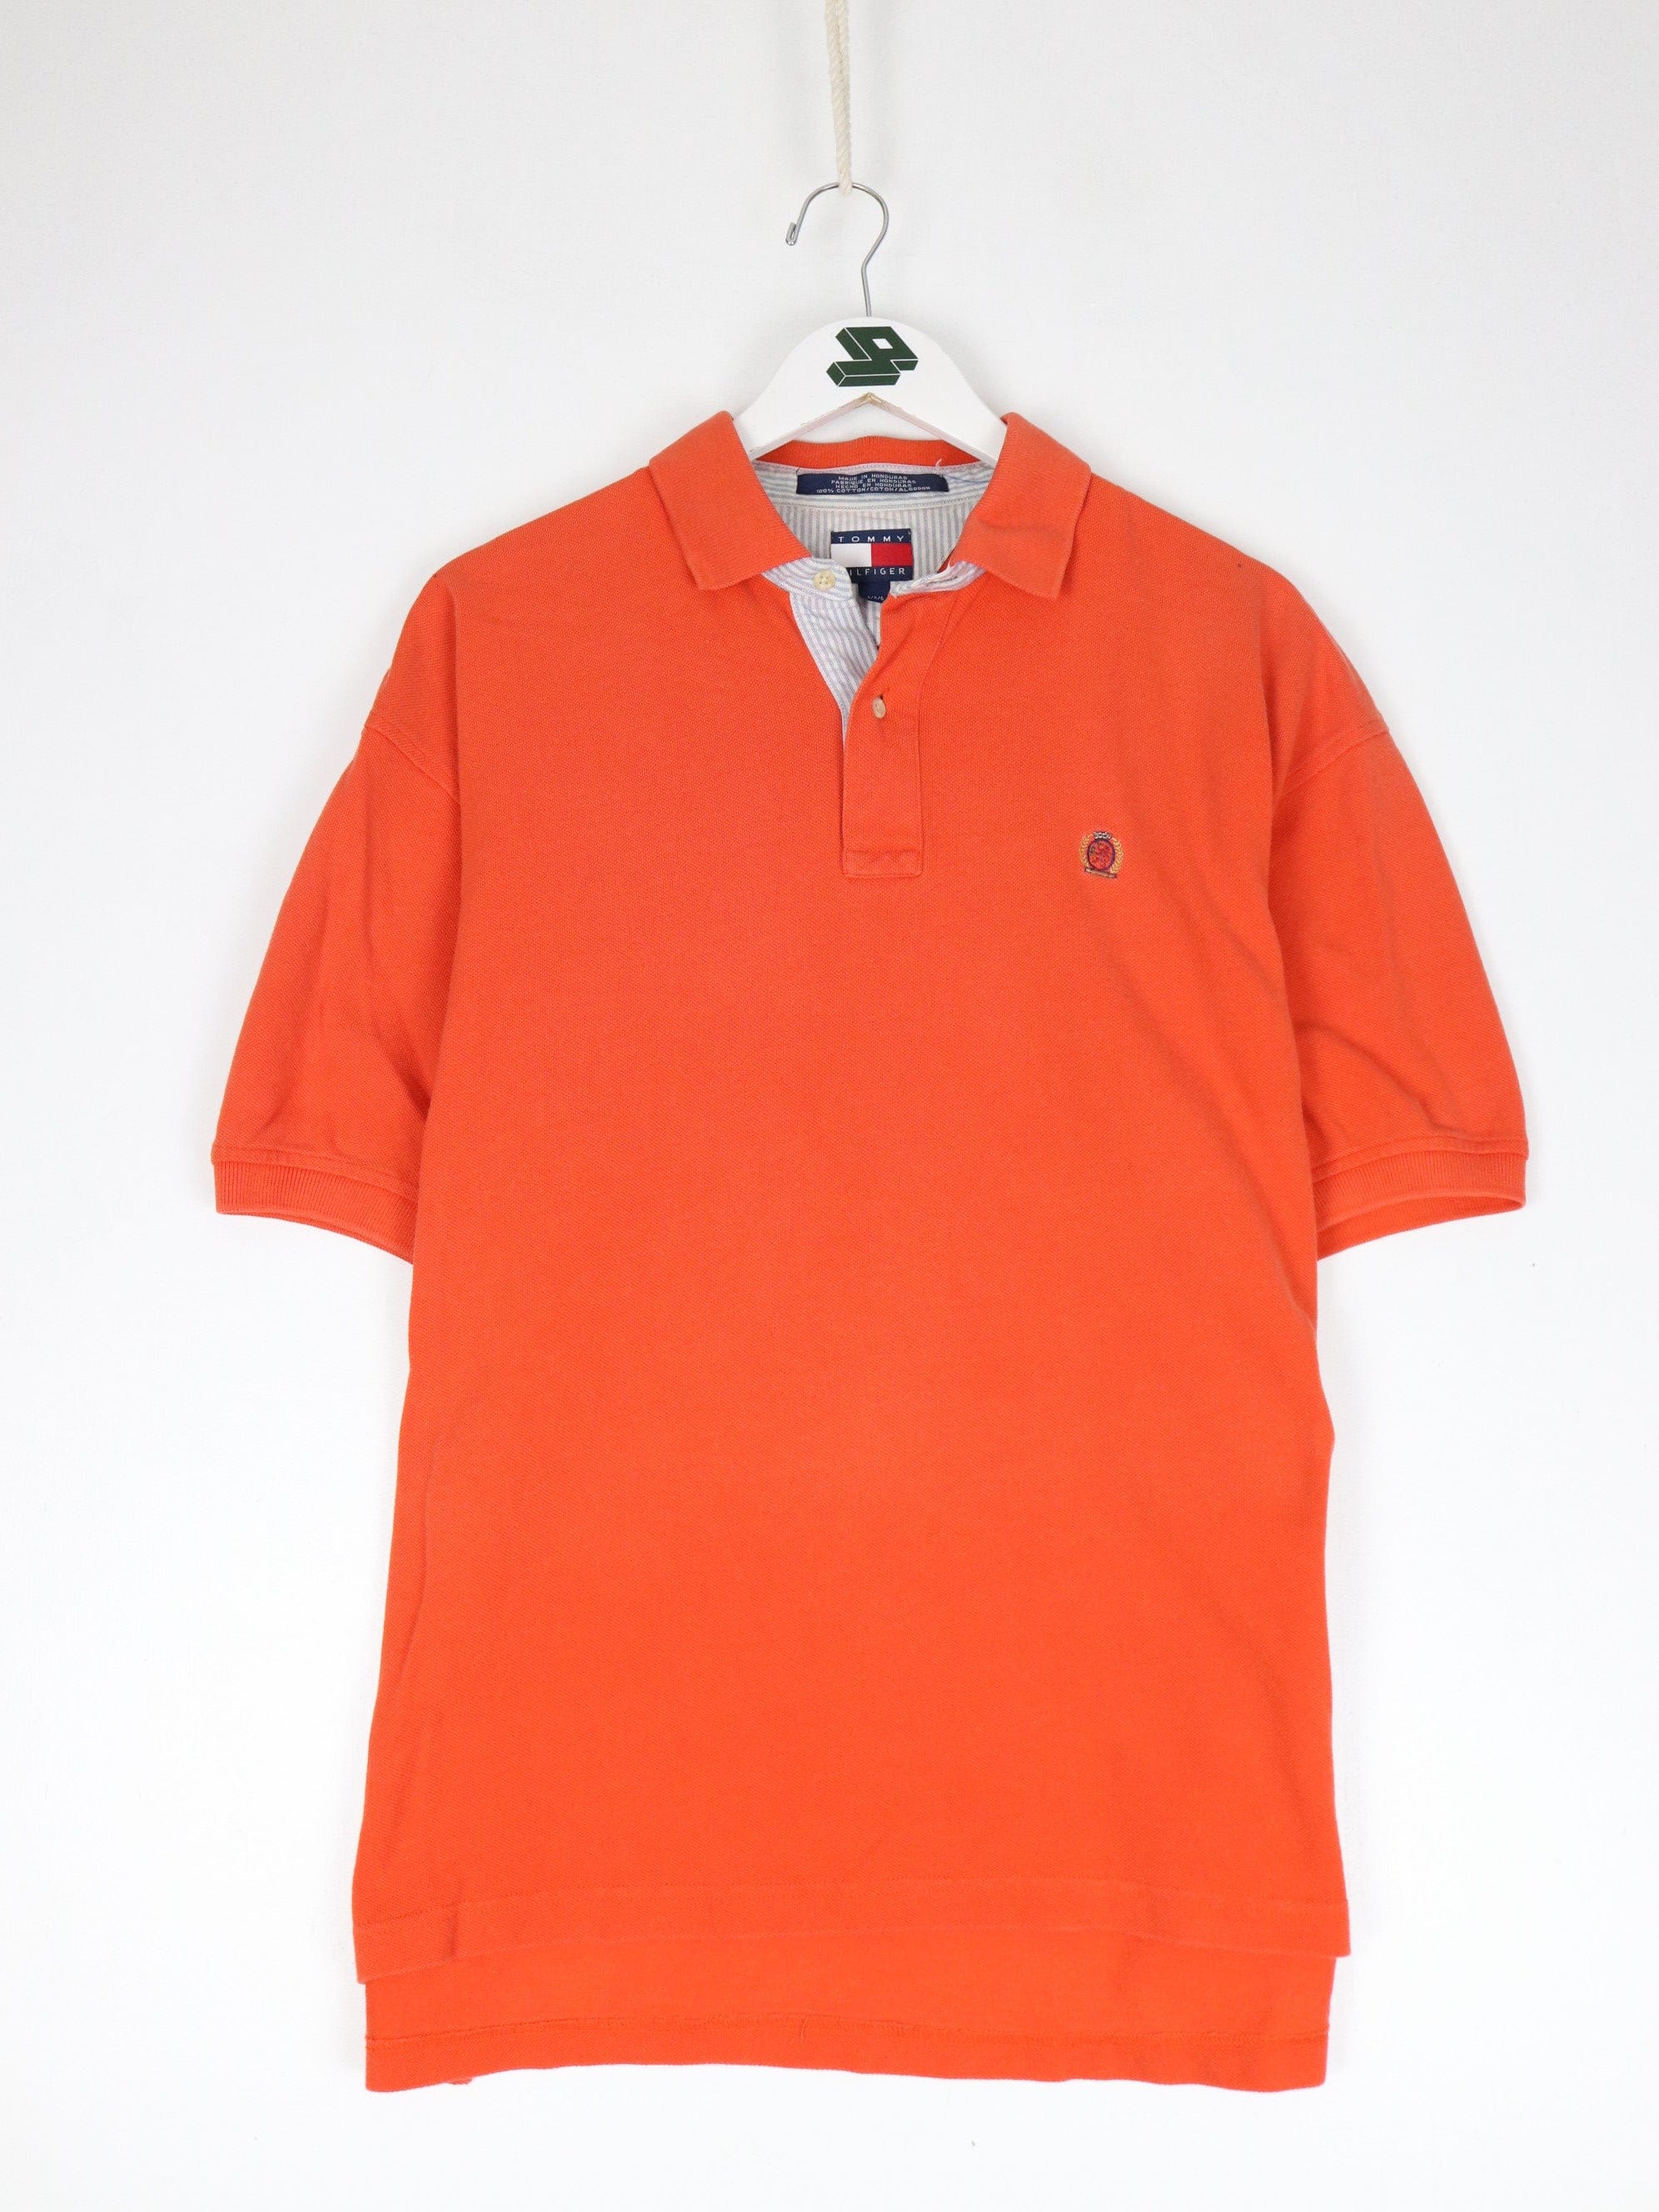 https://propervintagecanada.com/cdn/shop/files/tommy-hilfiger-button-up-shirts-vintage-tommy-hilfiger-polo-shirt-mens-large-orange-casual-31751294812219.jpg?v=1703116398